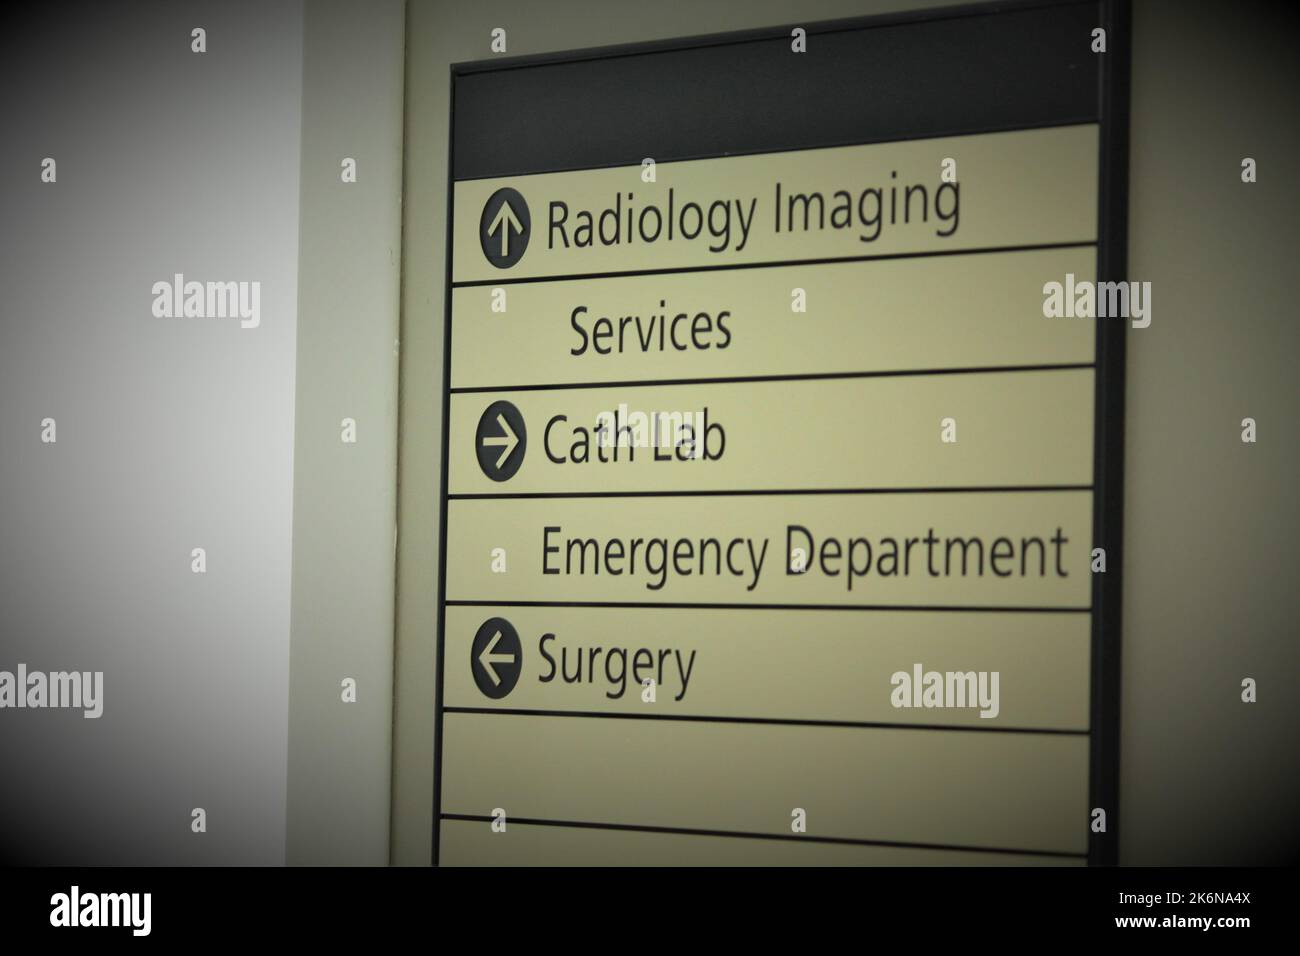 Segnale direzionale in un corridoio ospedaliero, che indirizza i pazienti all'imaging radiologico, al laboratorio di cateterismo e alla chirurgia. Foto Stock